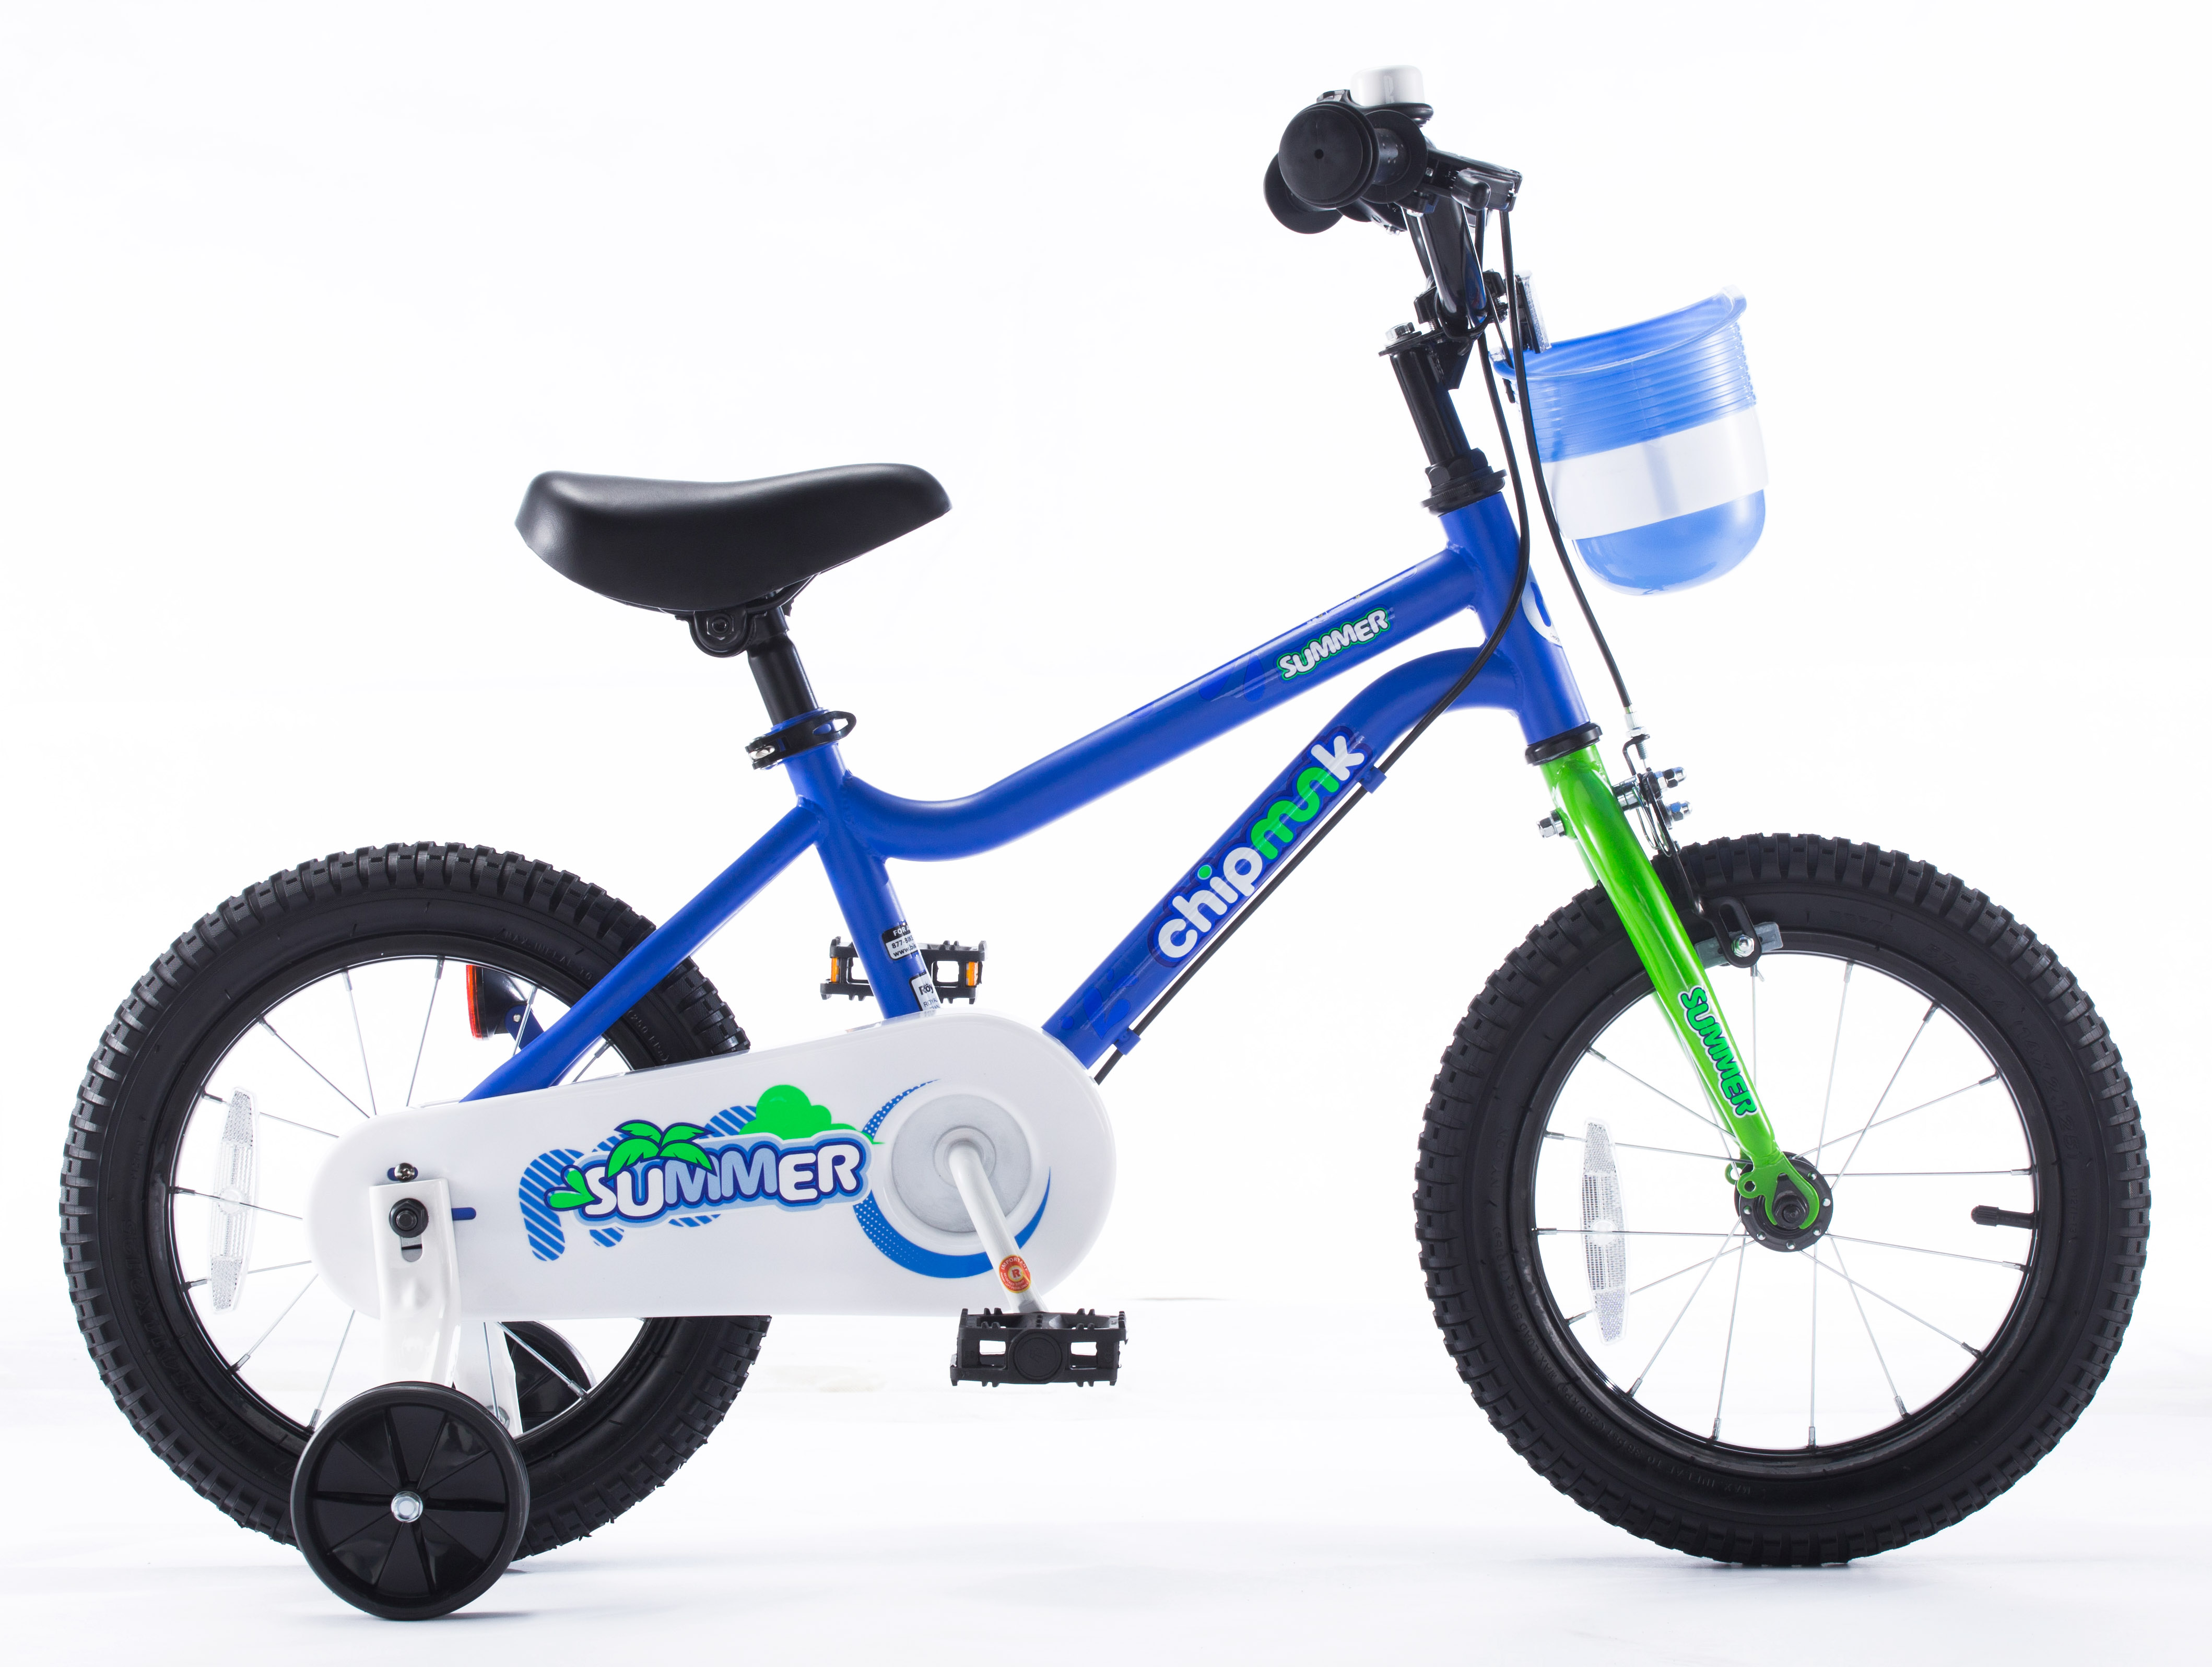  Отзывы о Детском велосипеде Royal Baby Chipmunk MK 16 (2021) 2021